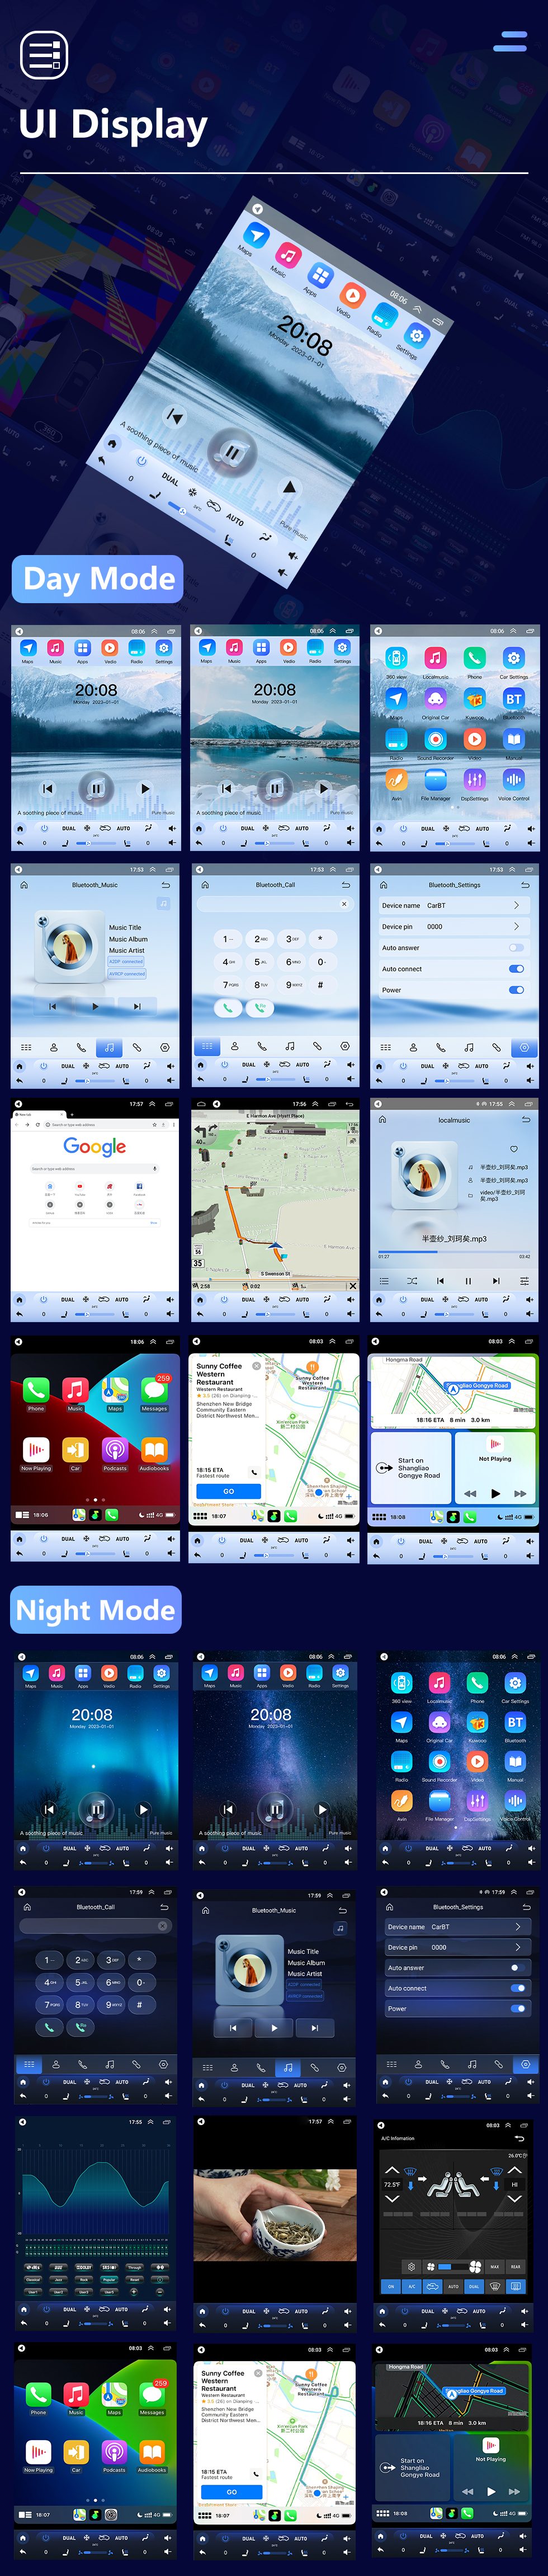 Seicane Android 10.0 9.7 polegadas para 2016 Chery Arrizo 5 Rádio com HD Touchscreen GPS Sistema de Navegação Suporte Bluetooth Carplay TPMS